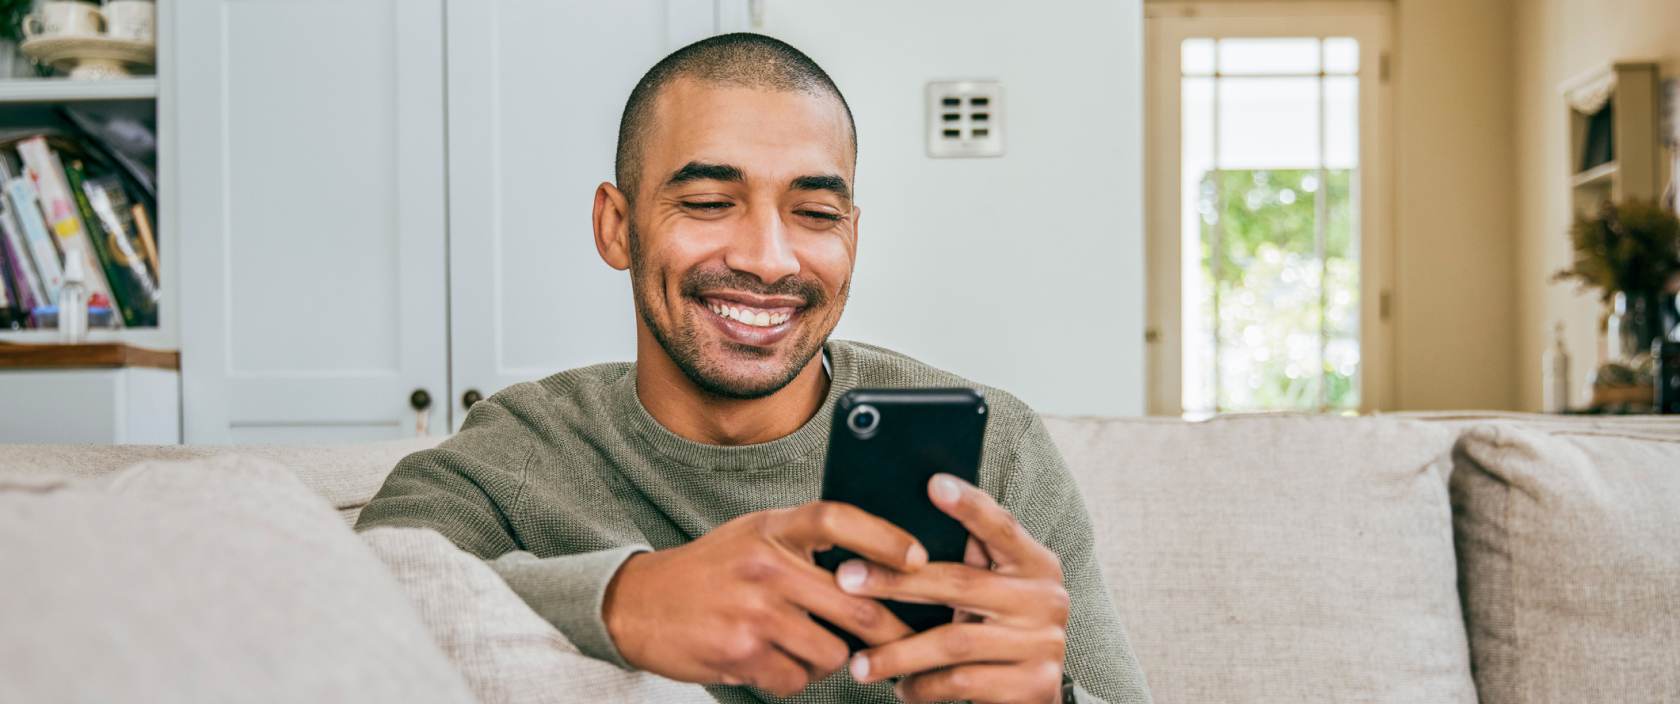 Un jeune homme sourit et fixe un téléphone cellulaire qui se trouve dans ses mains. Il est assis sur un canapé dans son salon.